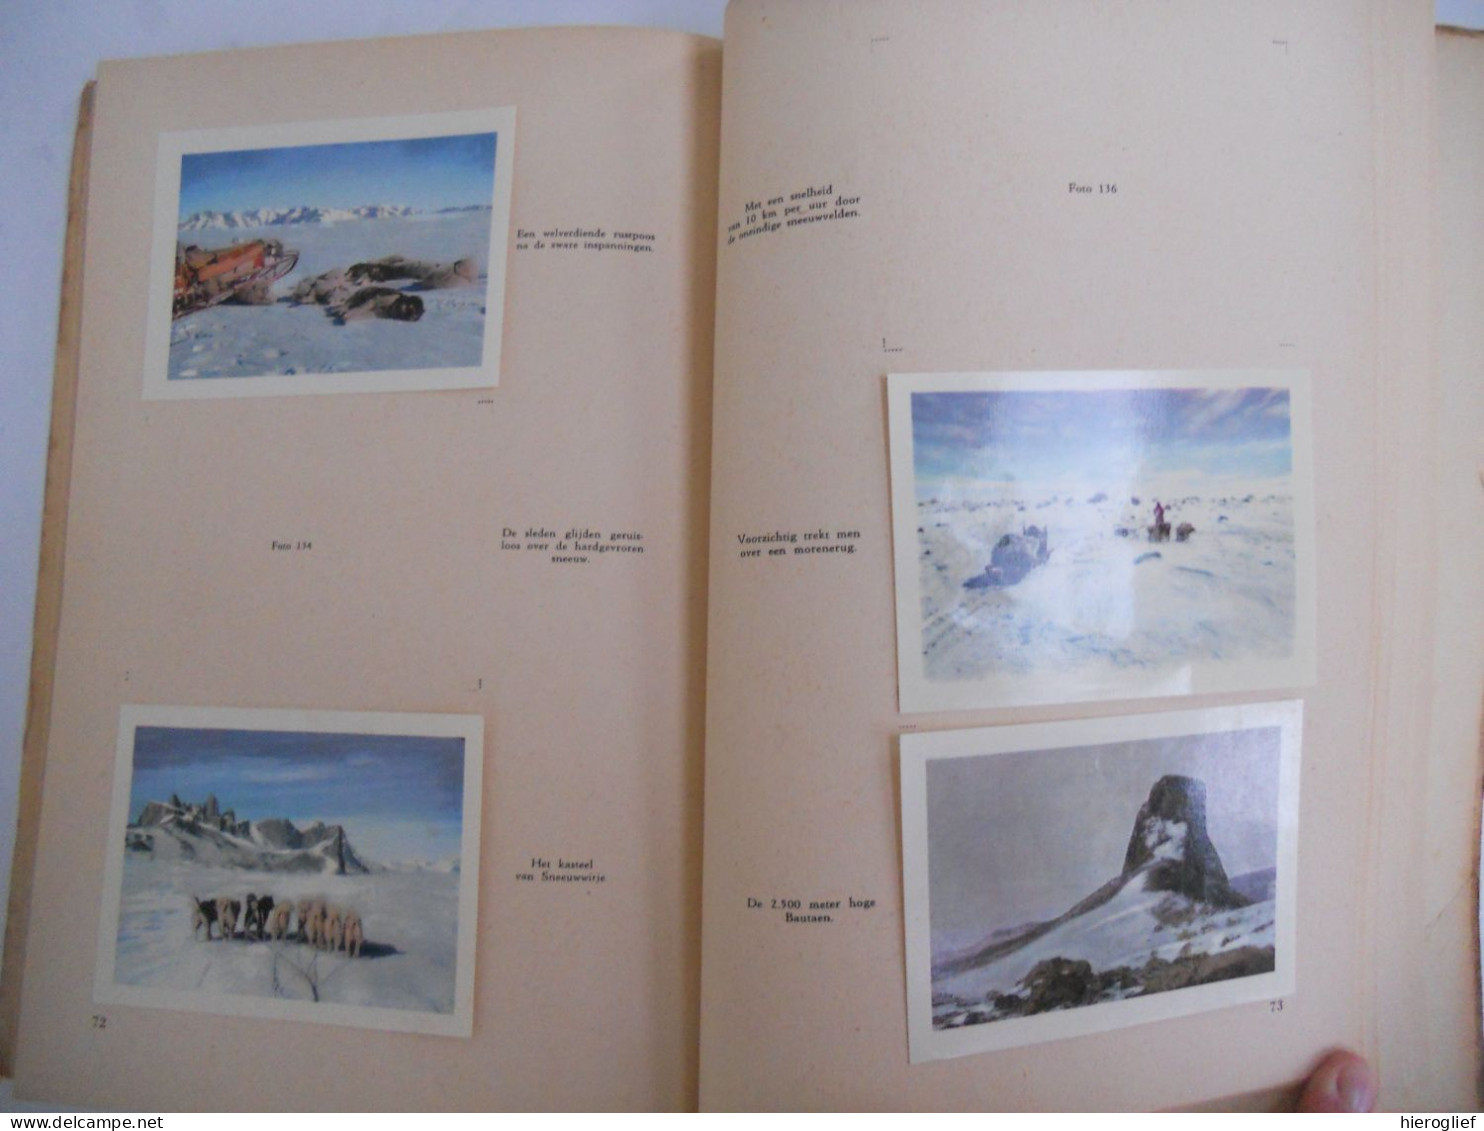 ANTARCTIC Belgische Zuidpool expeditie - album côte d'or - bevat 100 chromo's vd 164 antarctica